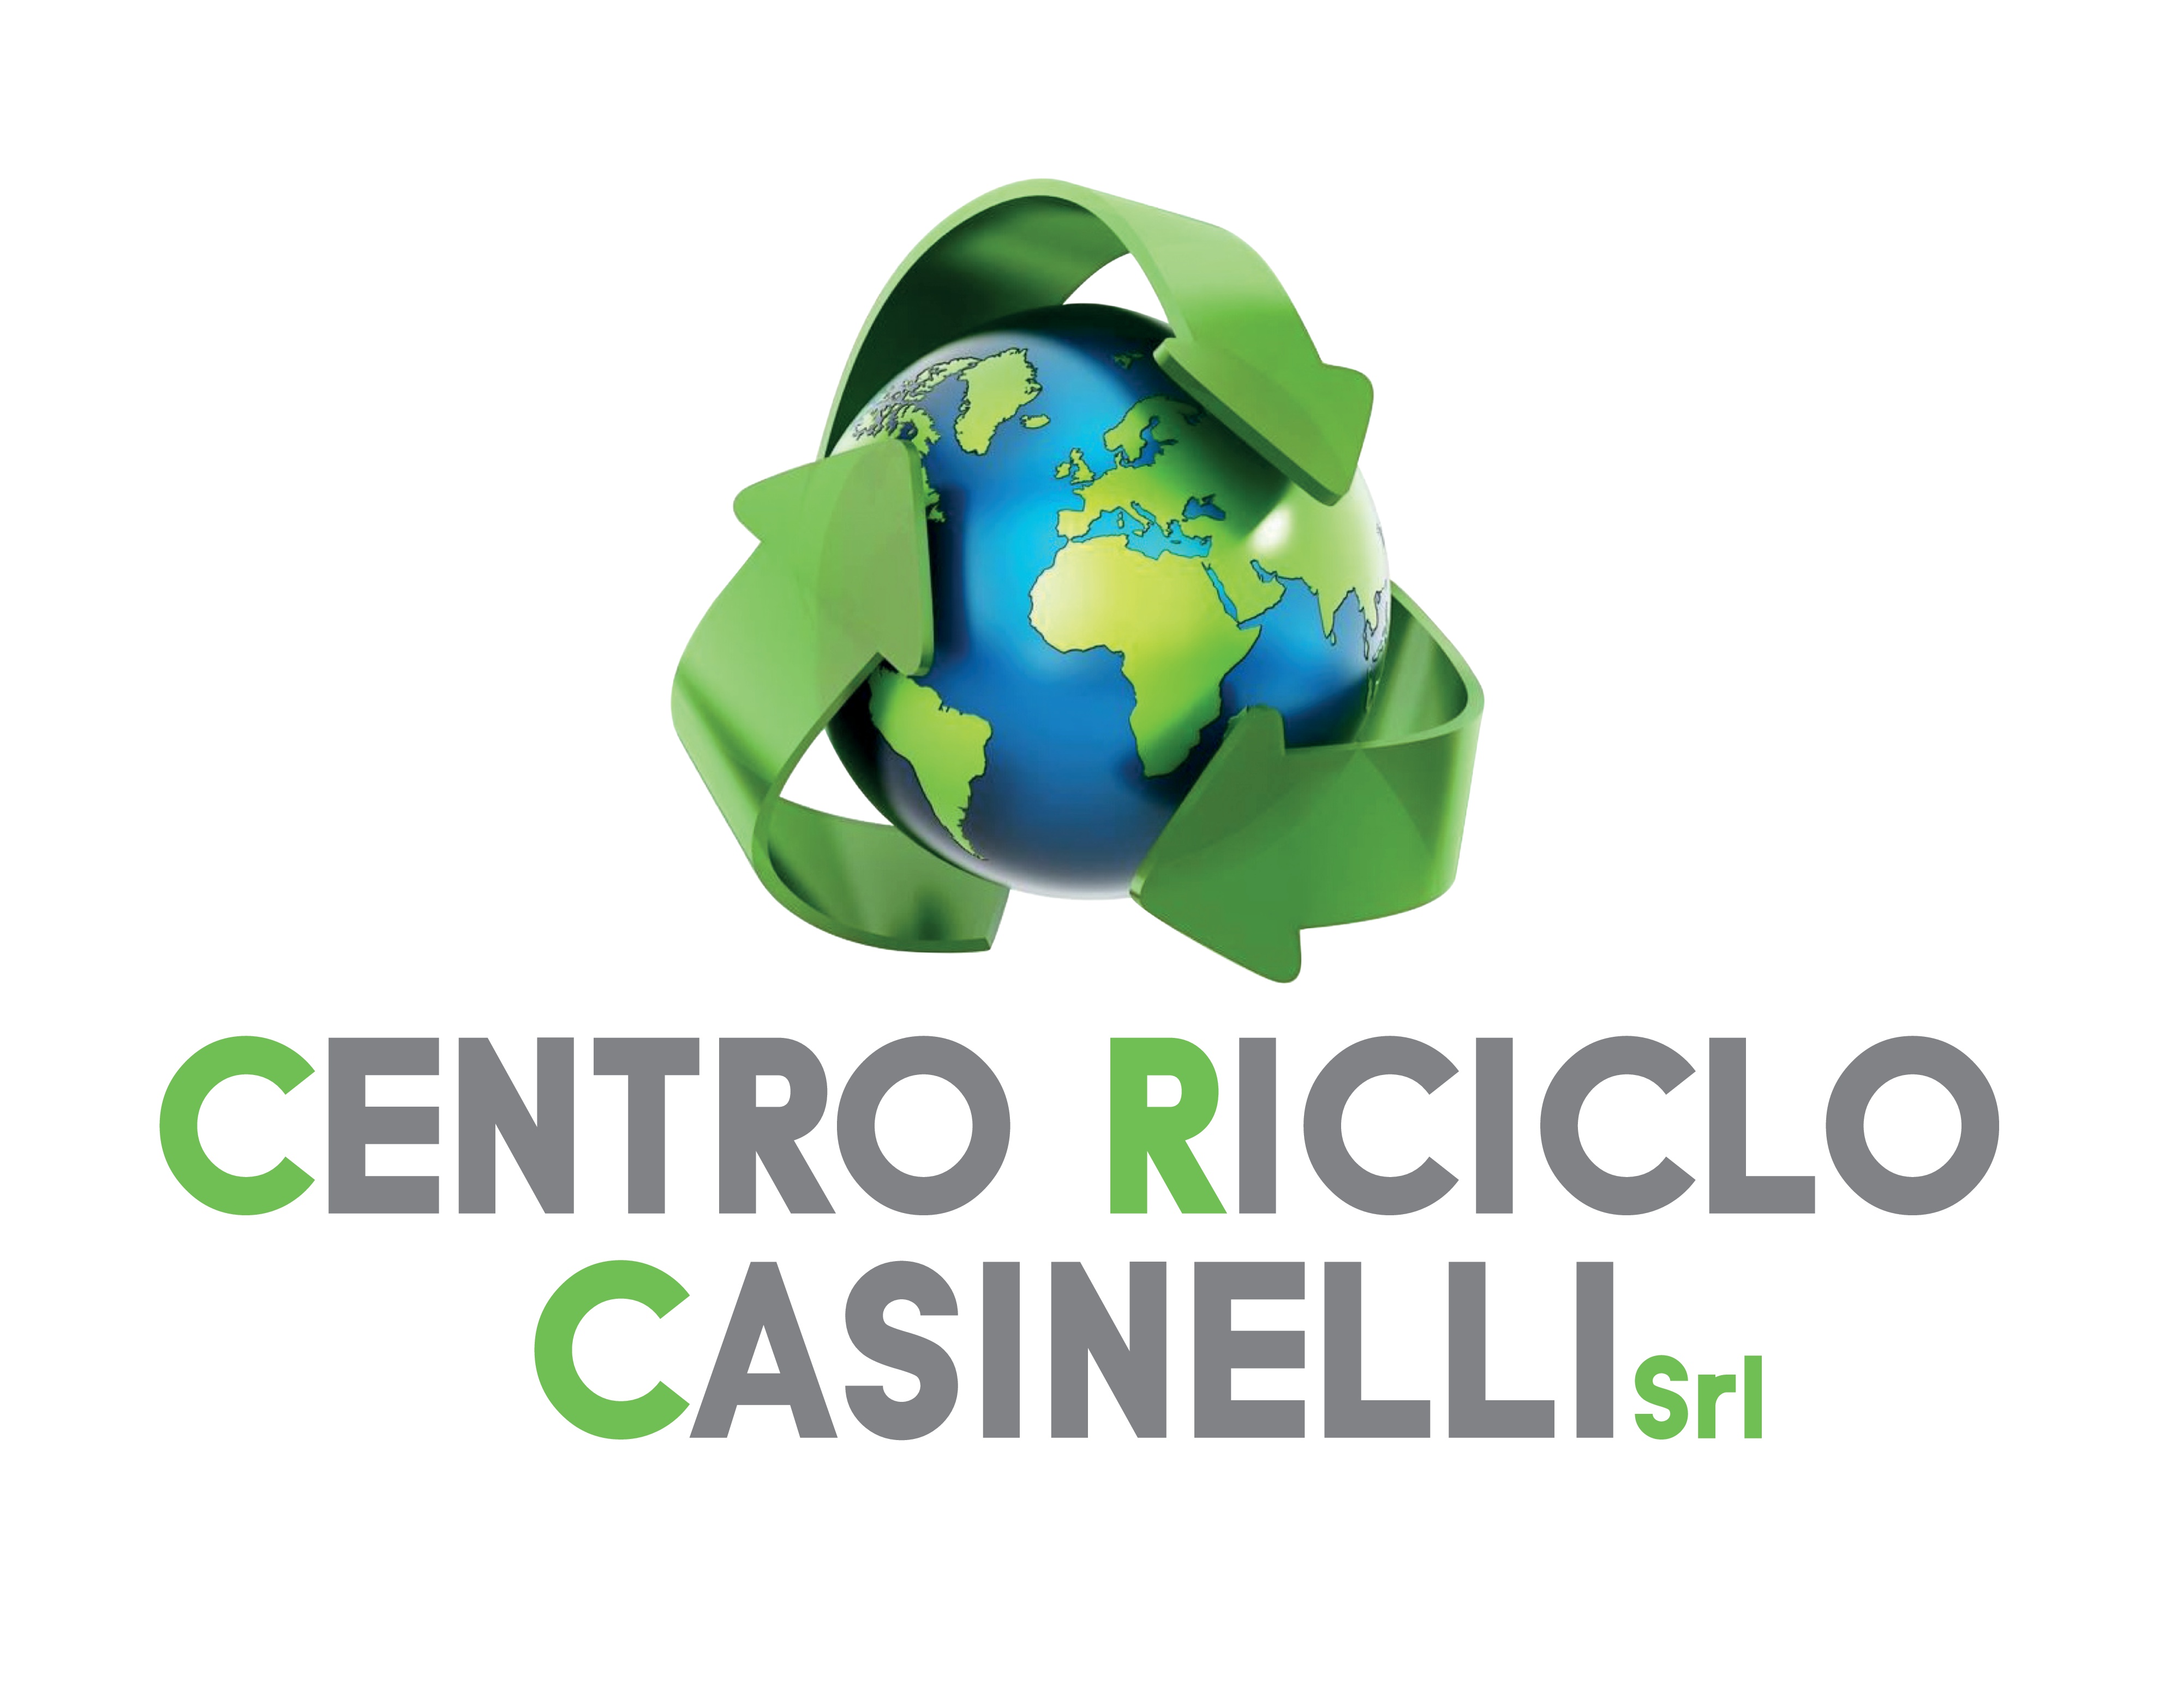 Centro Riciclo Casinelli srl-Home-Centro Riciclo Casinelli srl